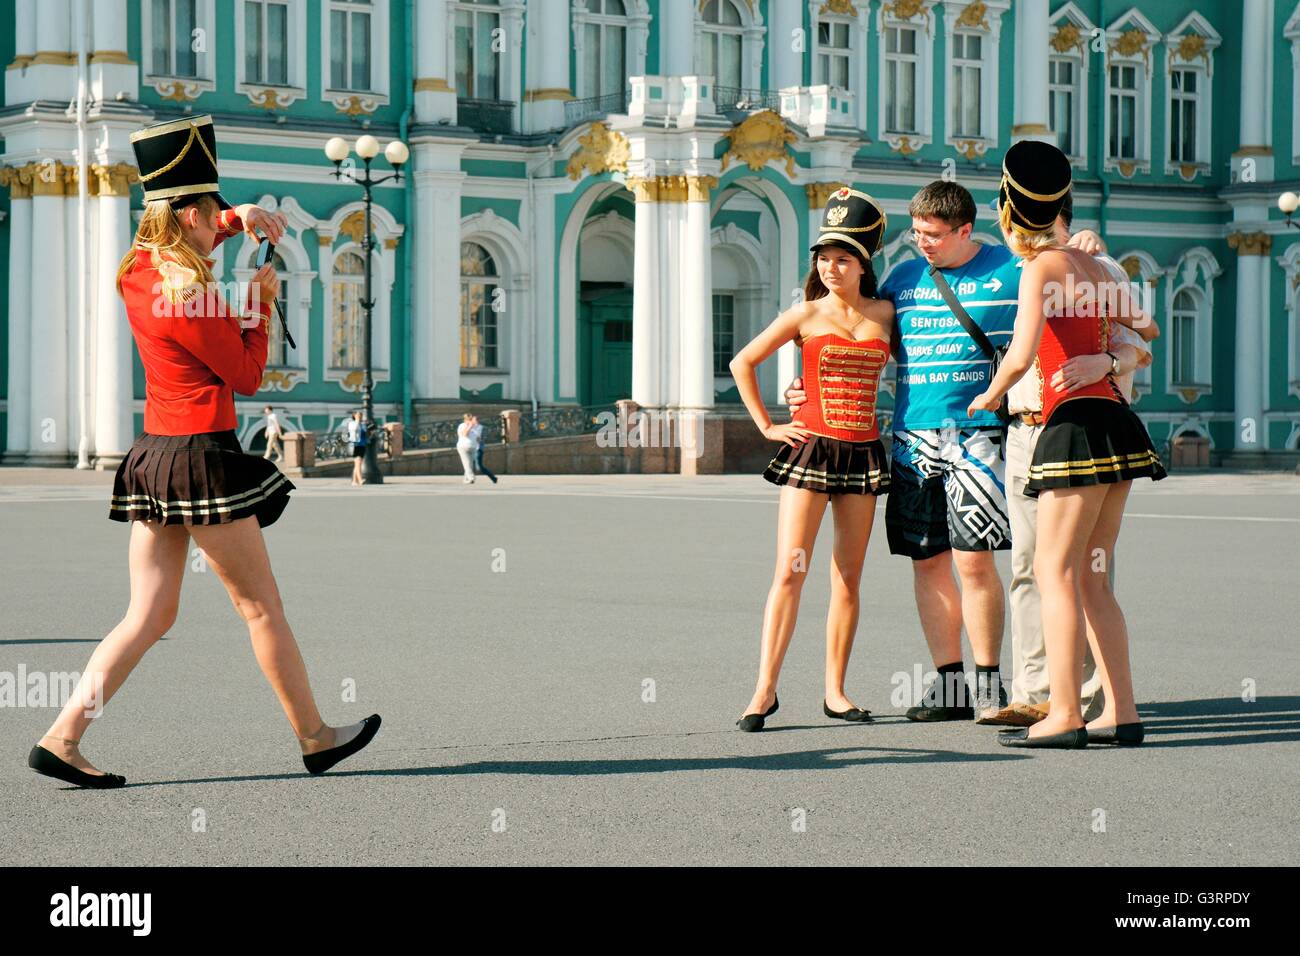 Sankt Petersburg Russland. unternehmungslustige junge Frauen als Palast Wachen für touristische Fotos vor dem Winter Palace darstellen Stockfoto